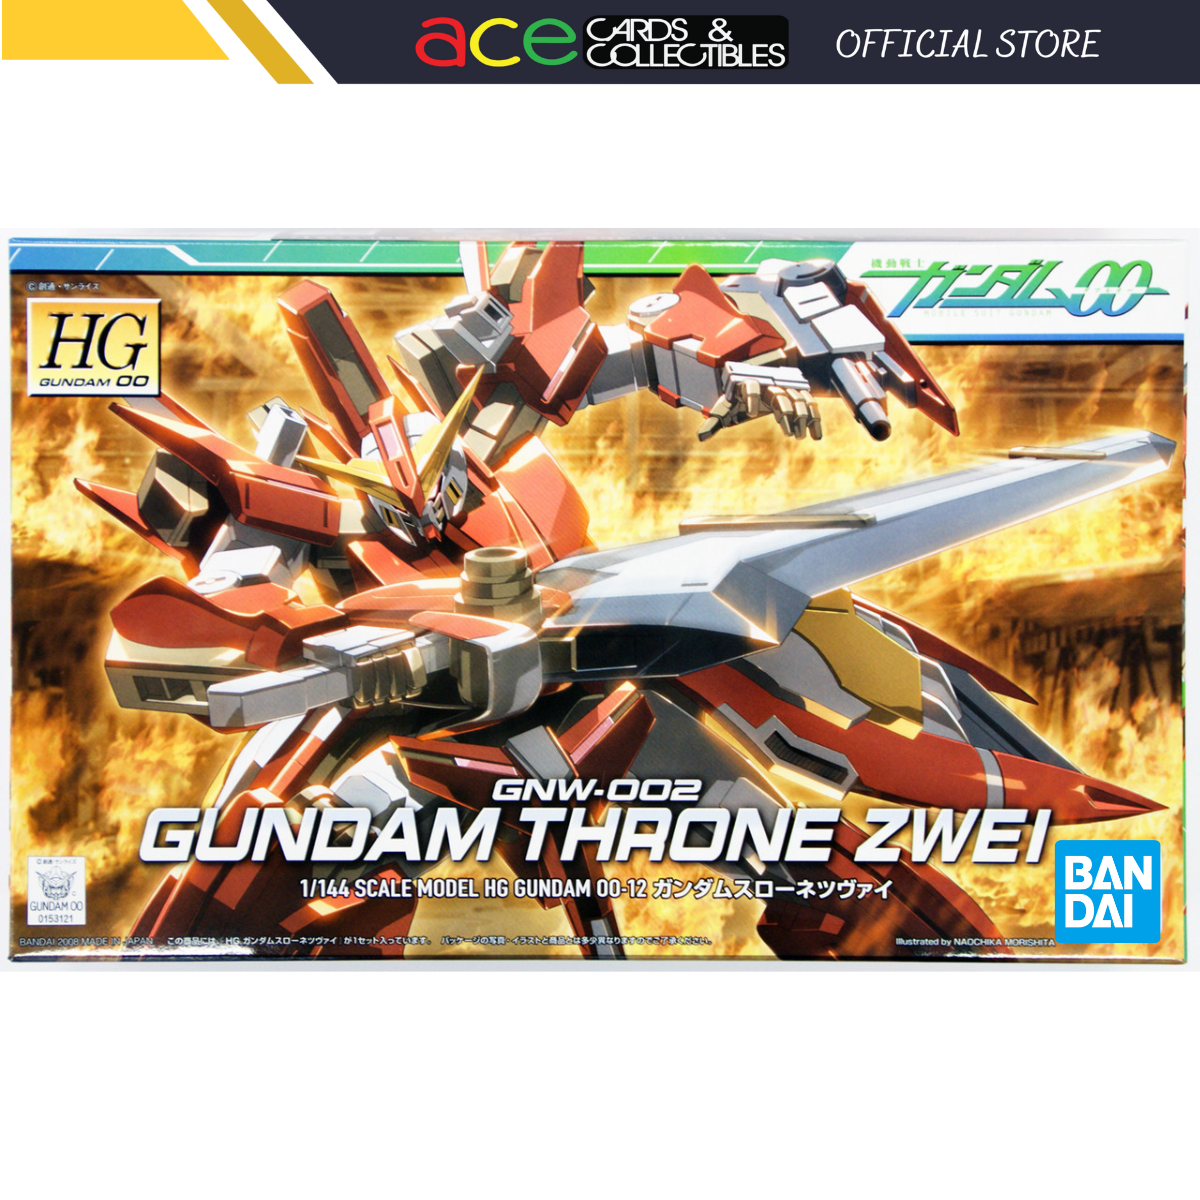 Gunpla HG/1/144 Gundam Throne Zwei-Bandai-Ace Cards & Collectibles